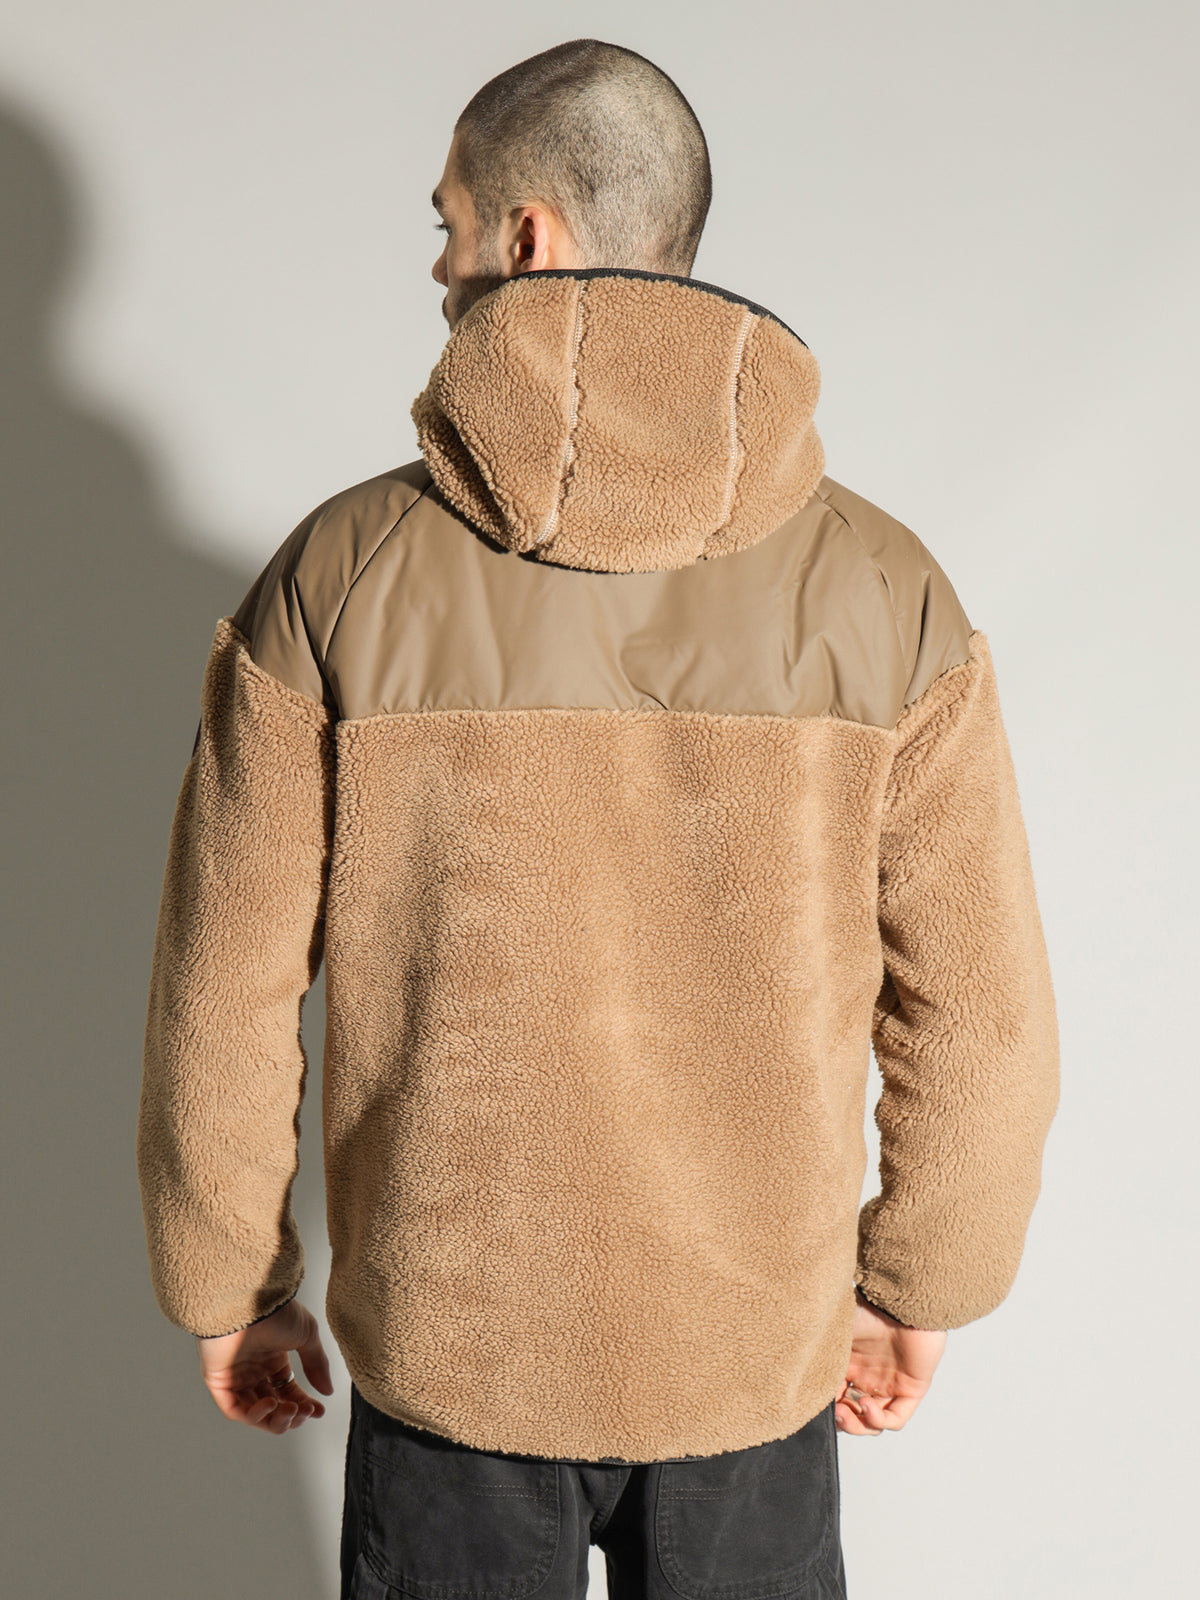 Haltia Fleece Jacket in Brown